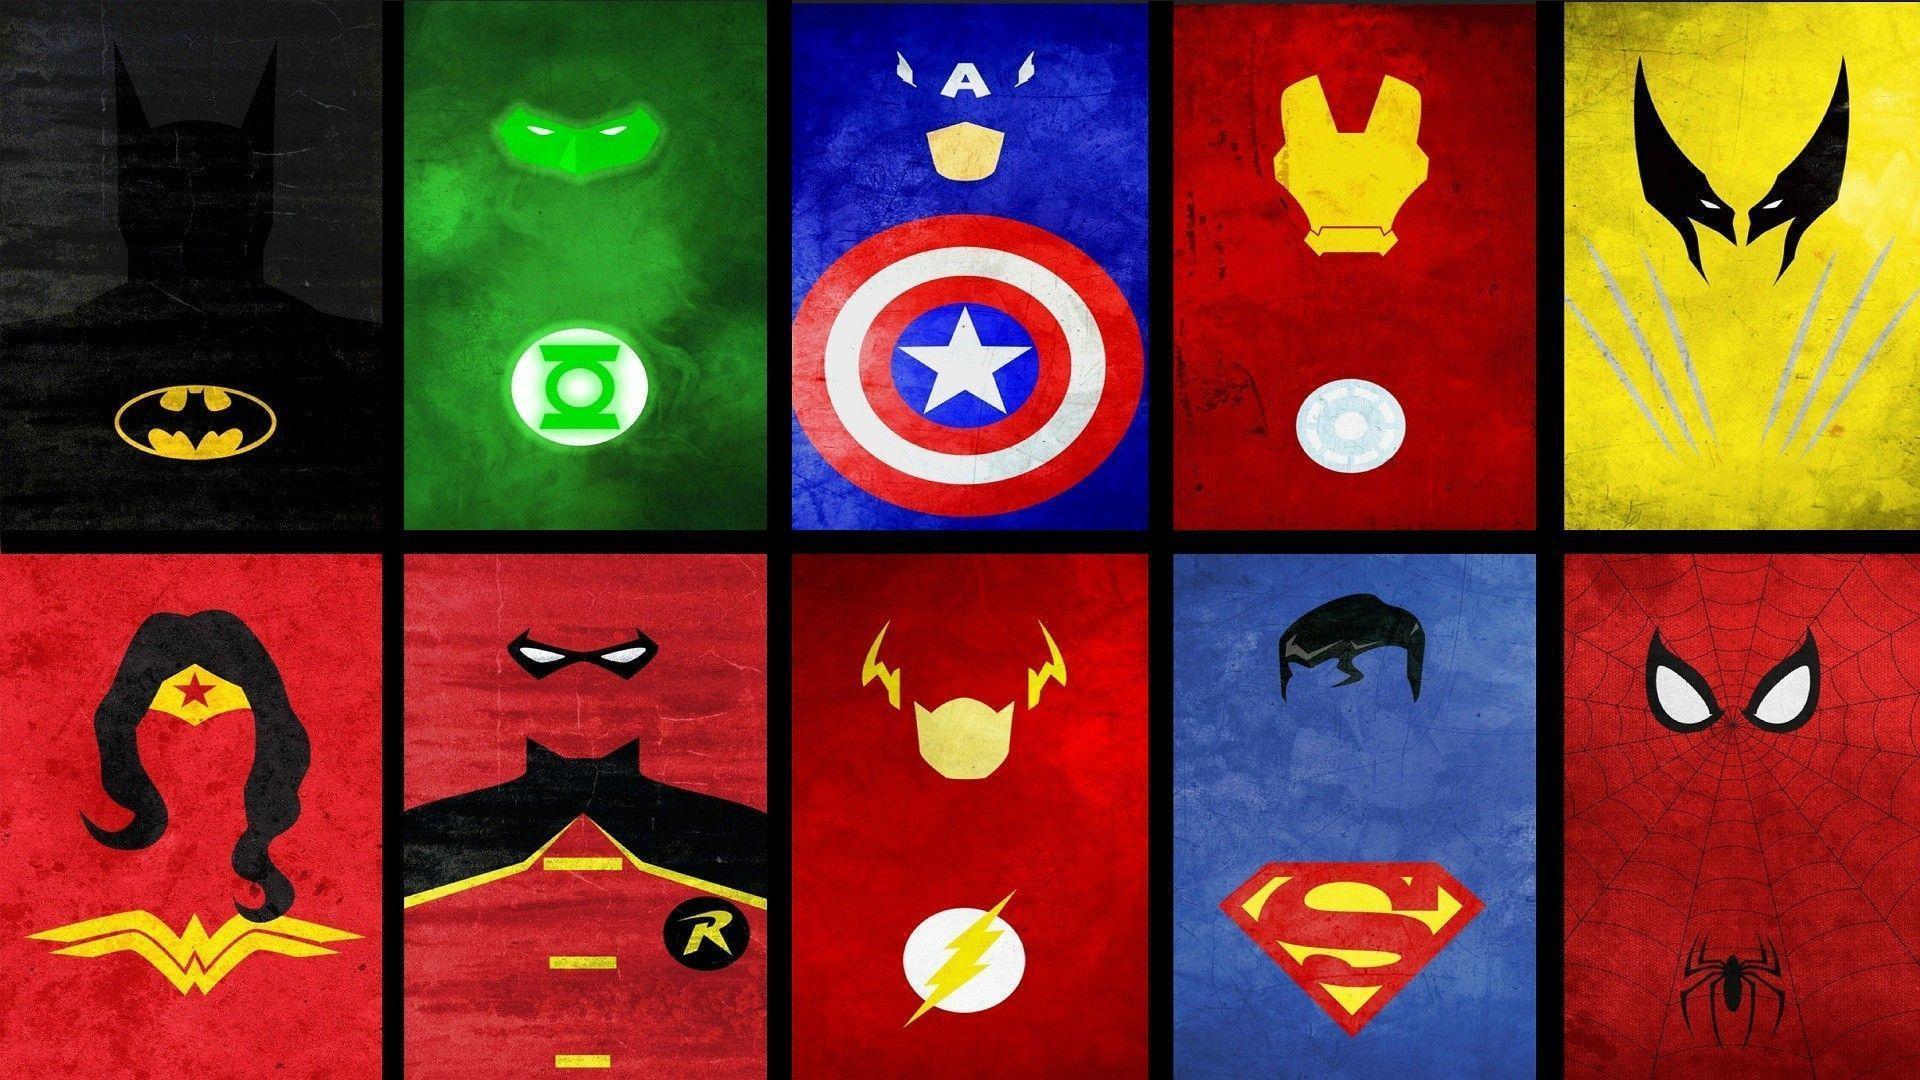 Superheroes Logos Wallpapers Wallpaper Cave HD Wallpapers Download Free Images Wallpaper [wallpaper981.blogspot.com]